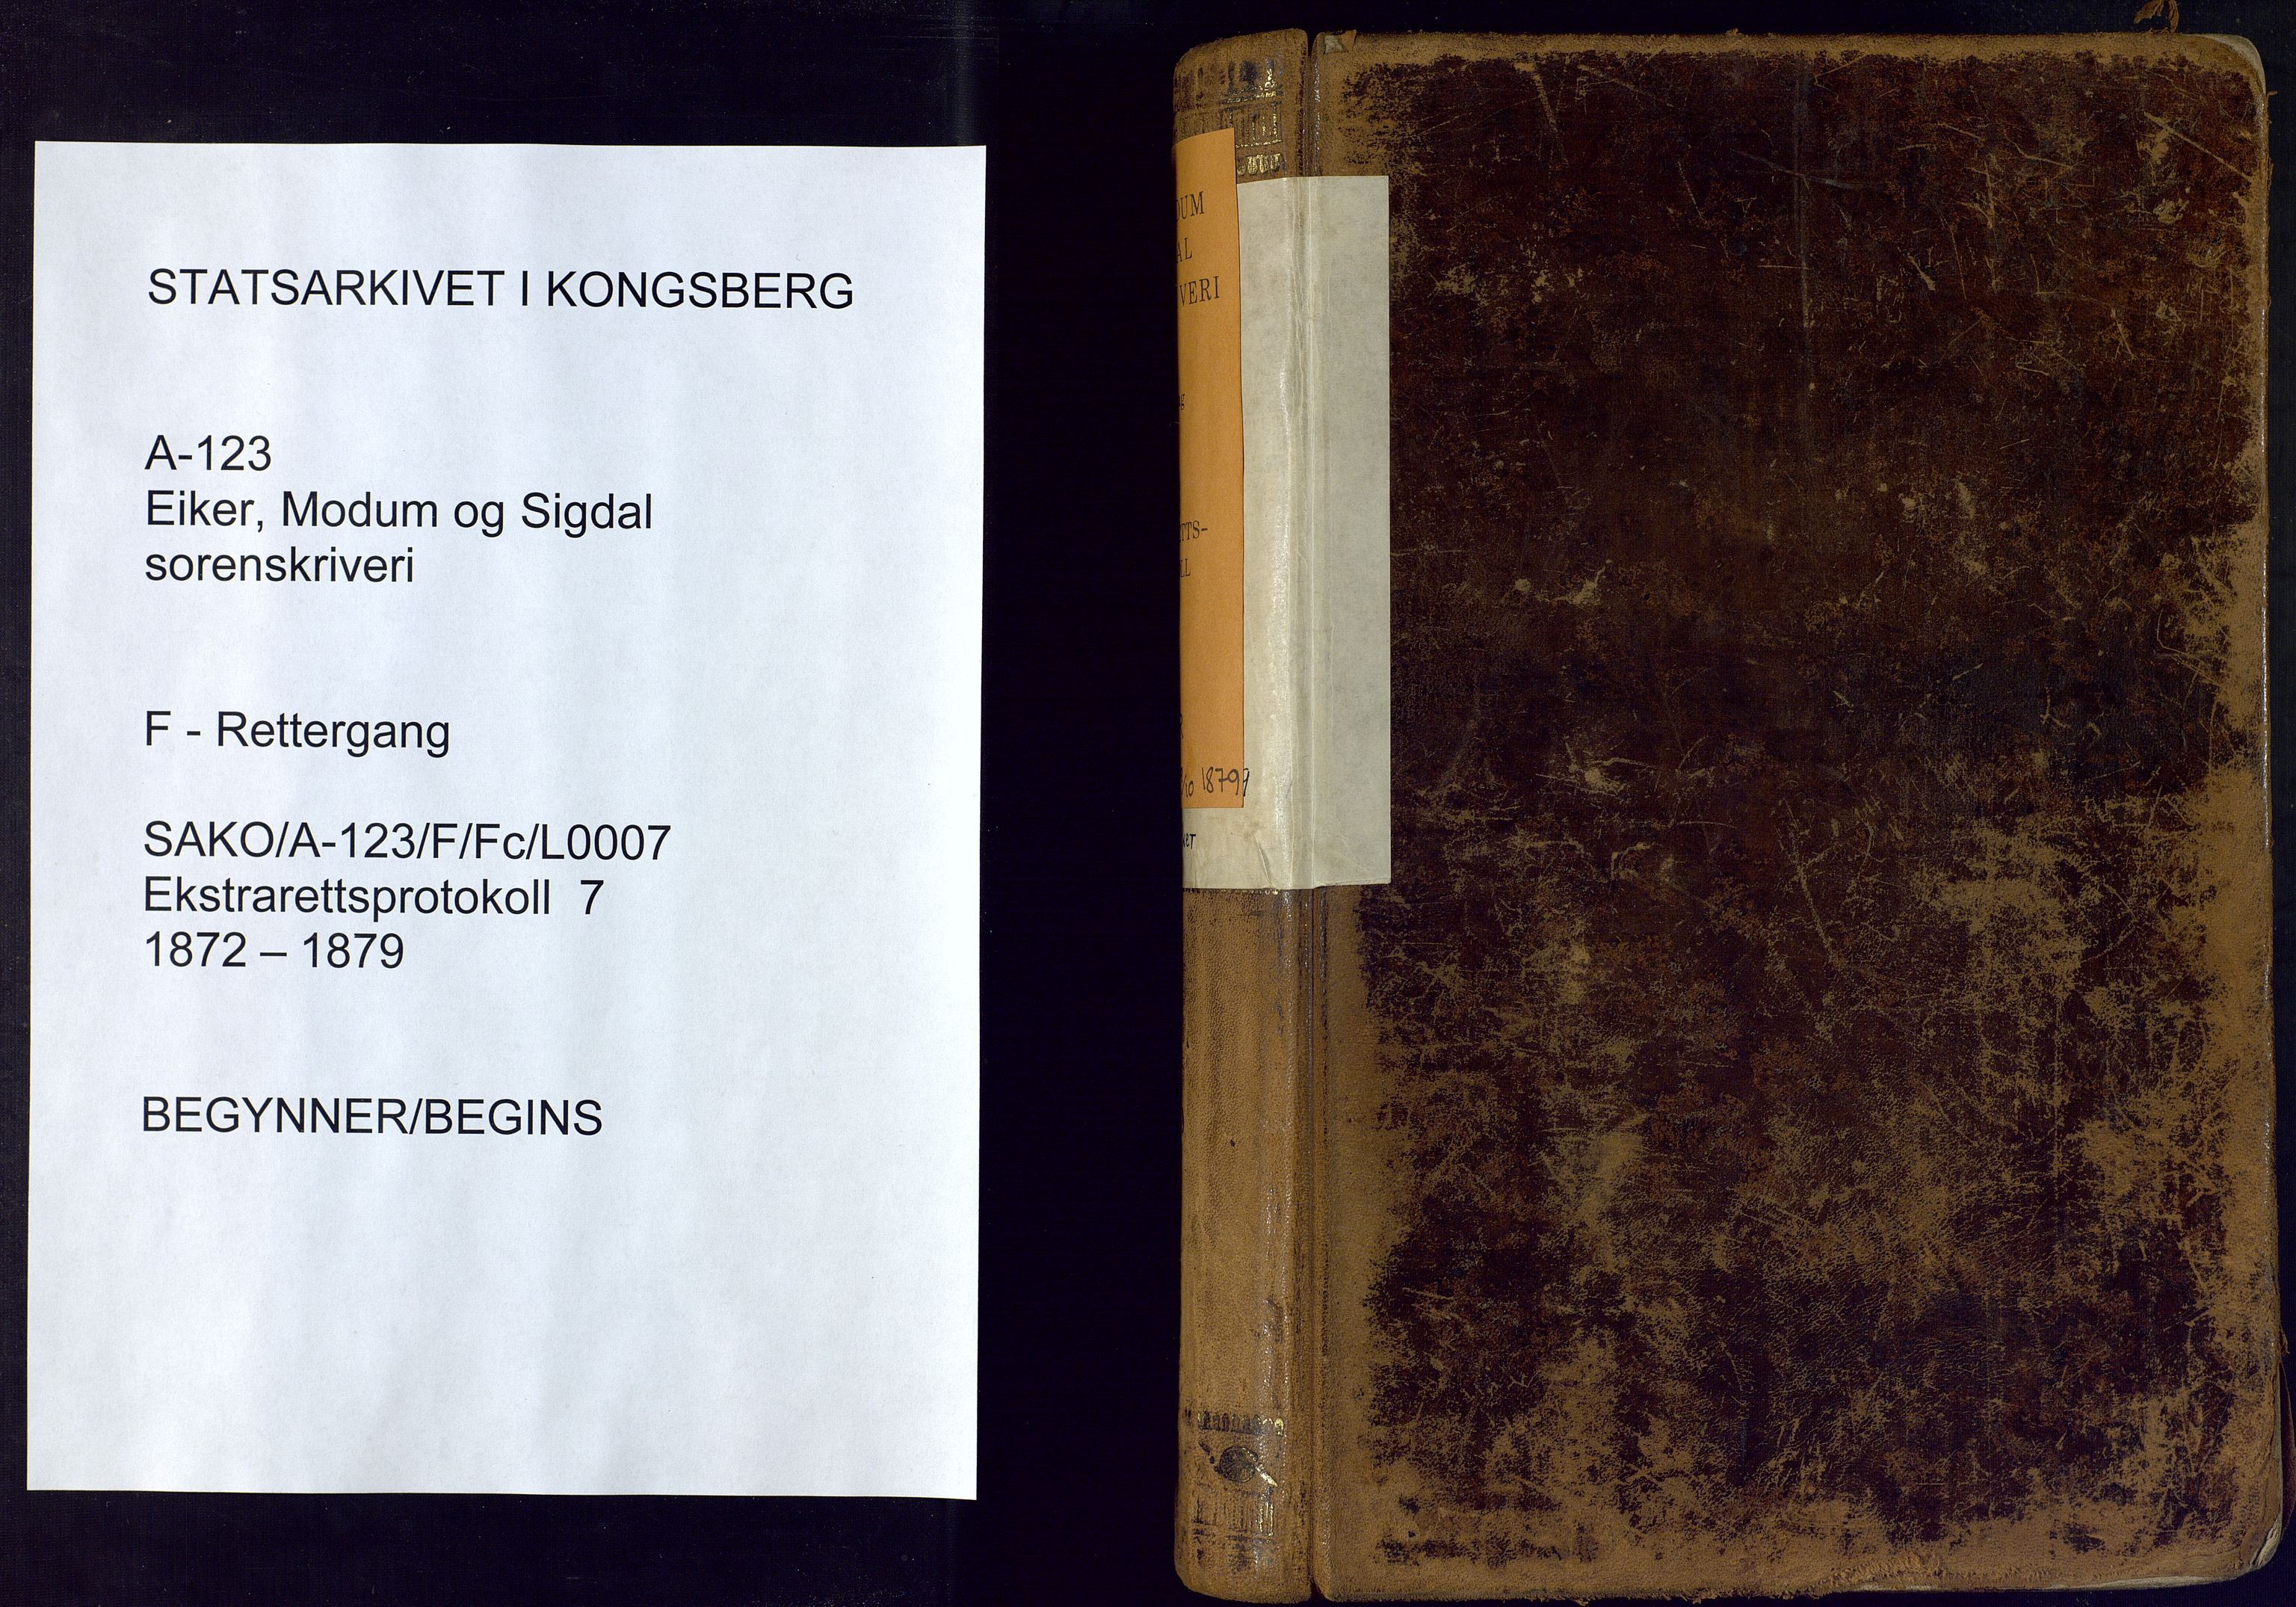 Eiker, Modum og Sigdal sorenskriveri, SAKO/A-123/F/Fc/L0007: Ekstrarettsprotokoll - Eiker, 1872-1879